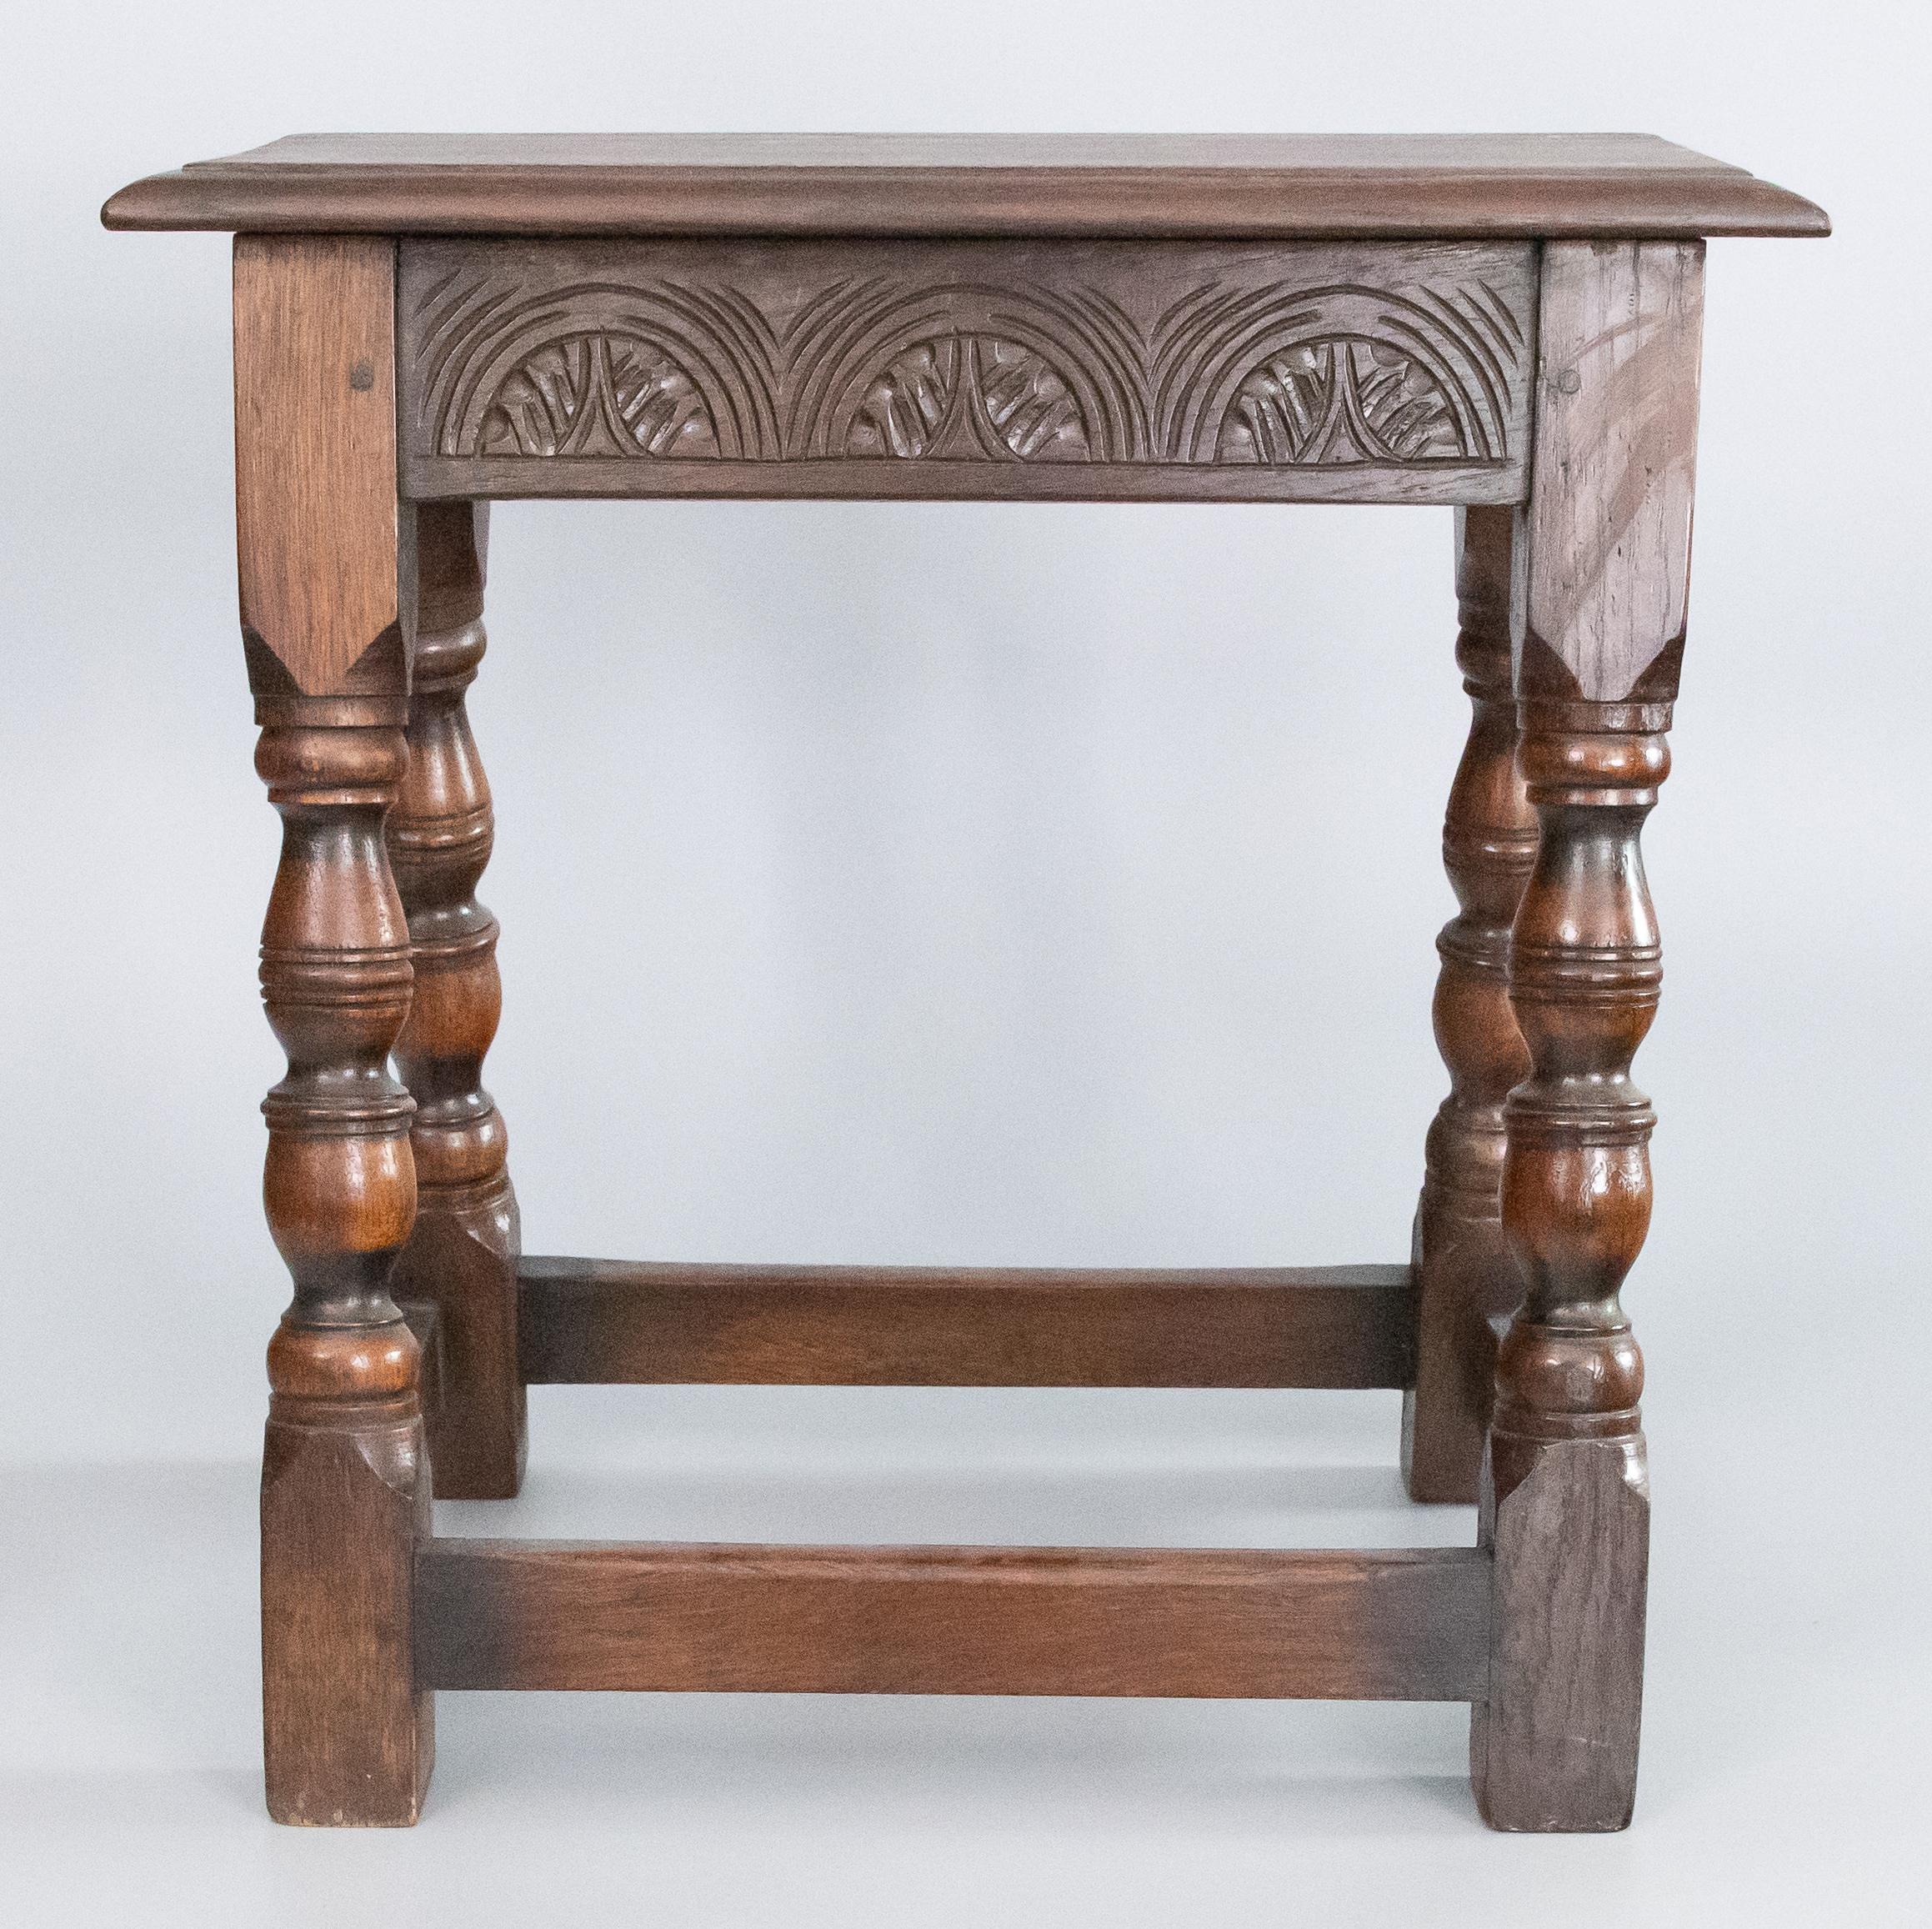 Superbe tabouret à joint en chêne anglais du XIXe siècle avec un tablier magnifiquement sculpté, des pieds tournés à la main et un siège biseauté. Ce tabouret raffiné est idéal pour s'asseoir et peut également servir de table d'appoint pour des